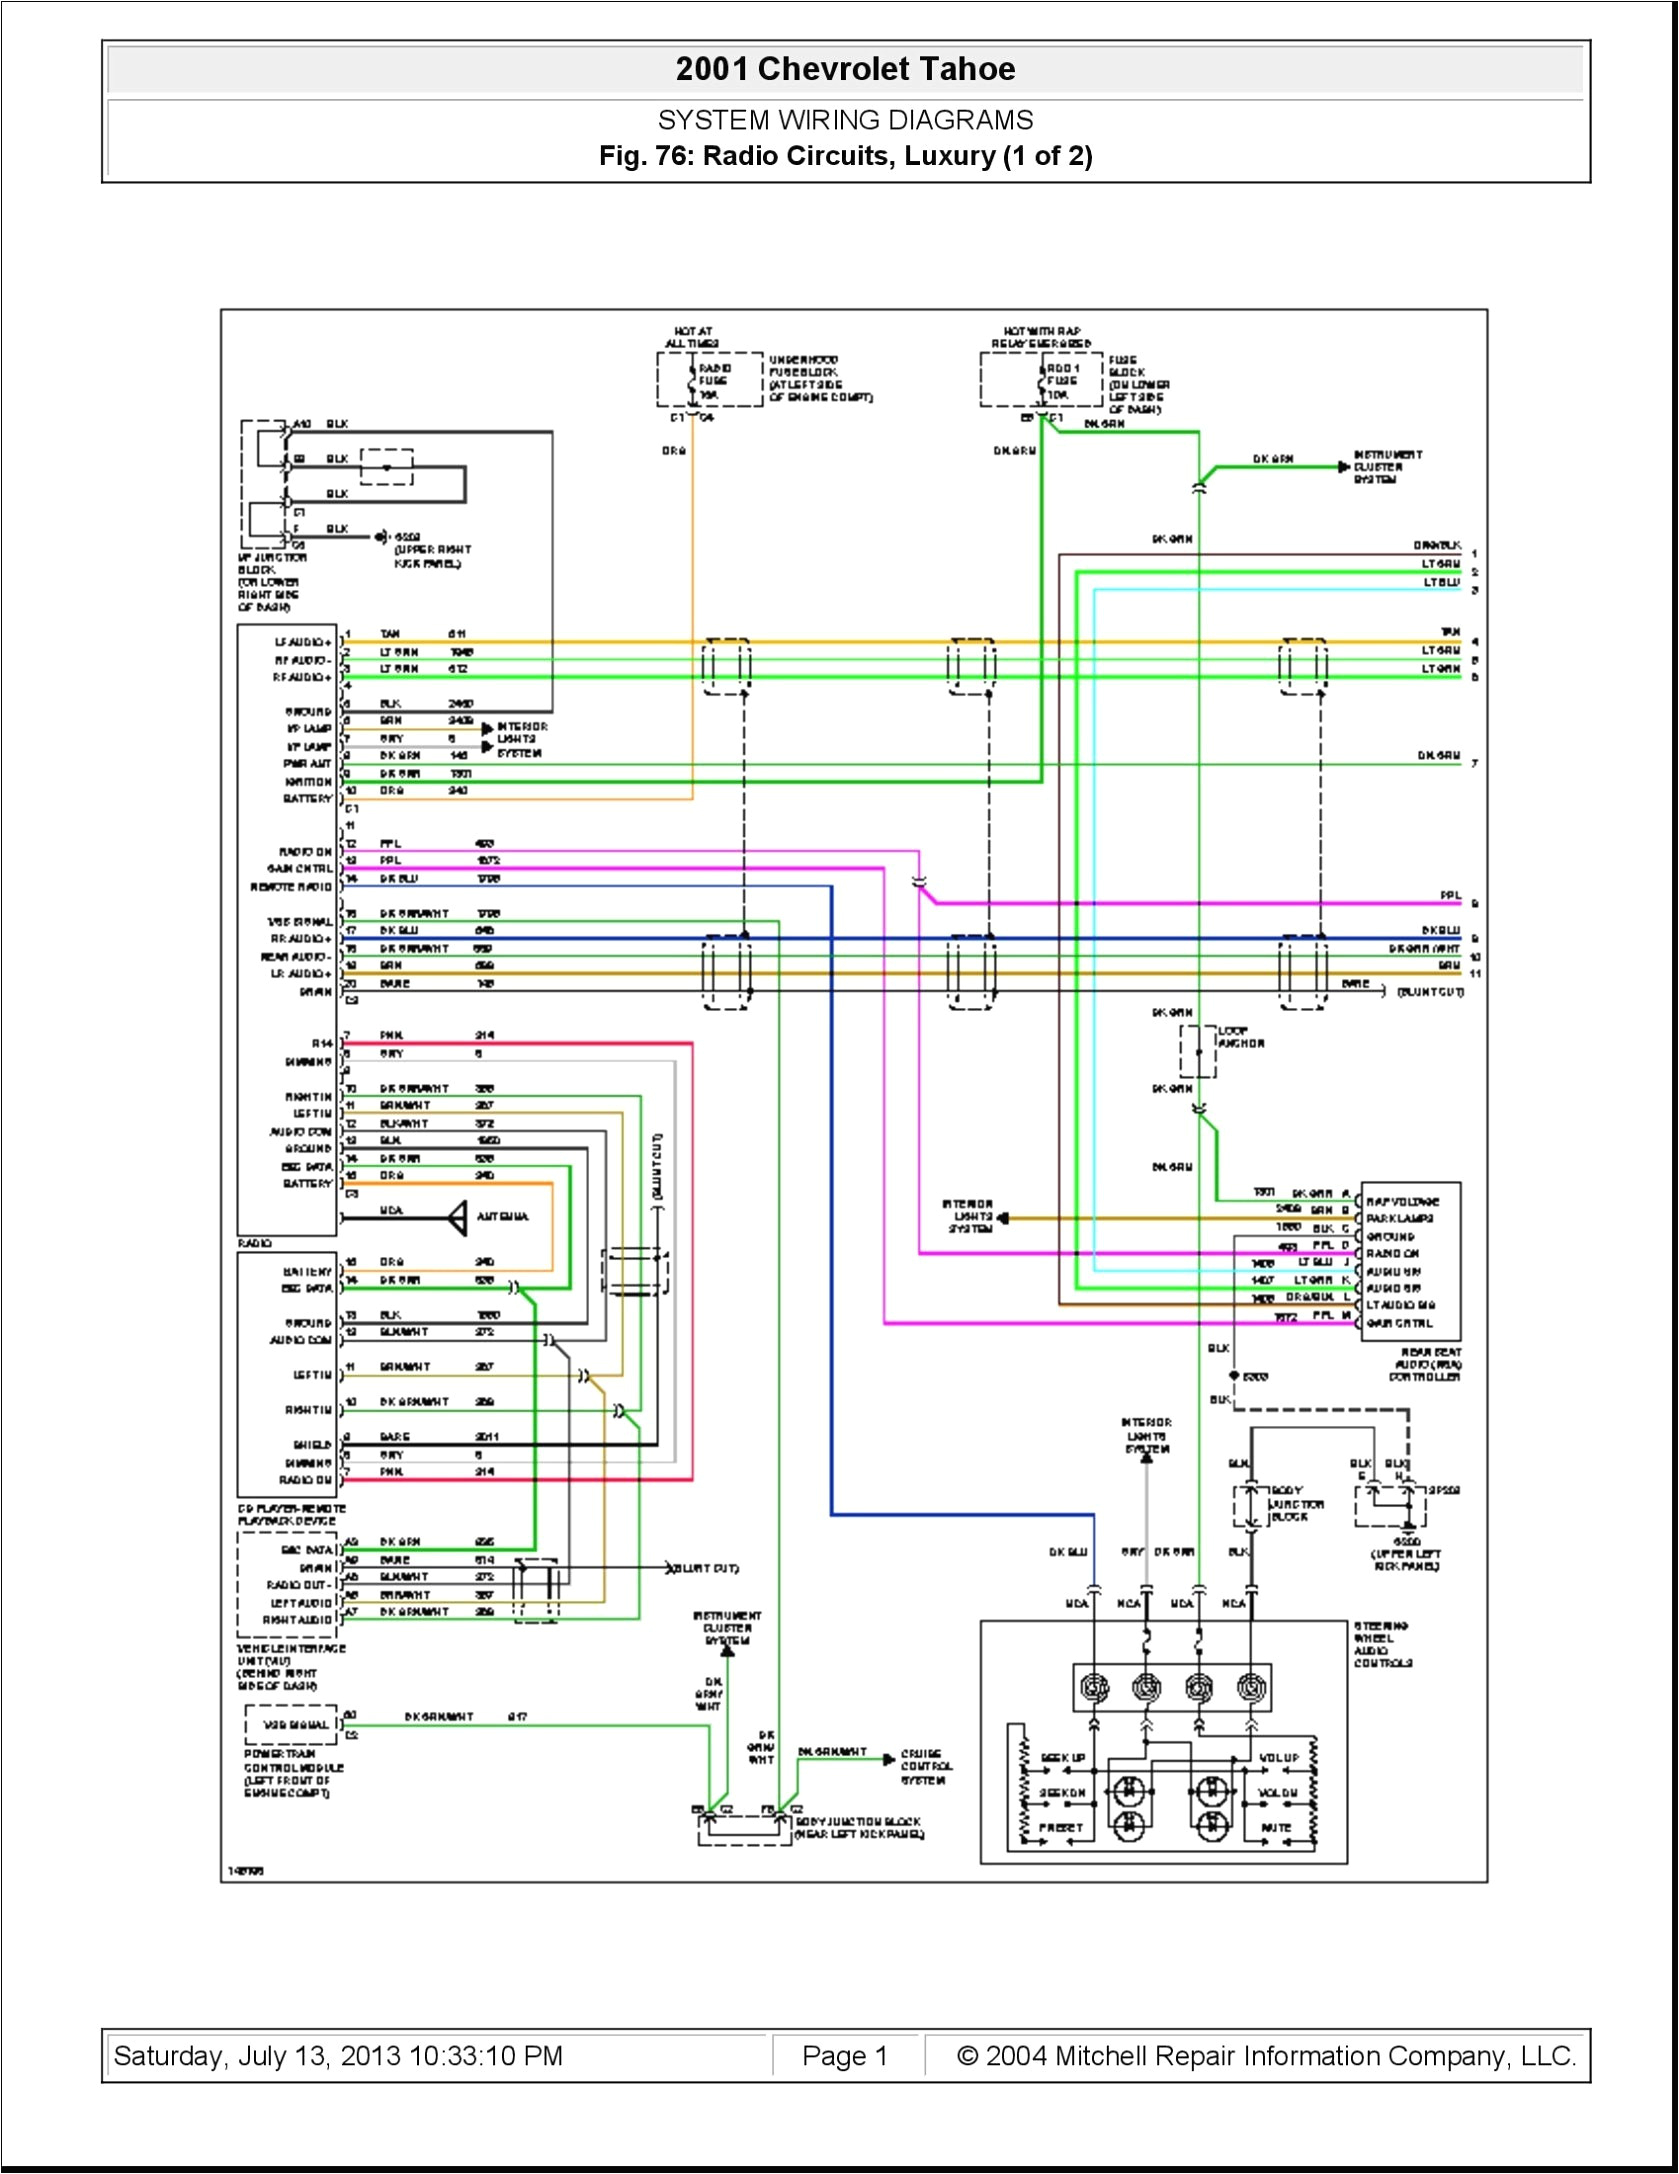 2008 Silverado Wiring Diagram 68 Chevy Impala Radio Wiring Diagram Wiring Diagram Post